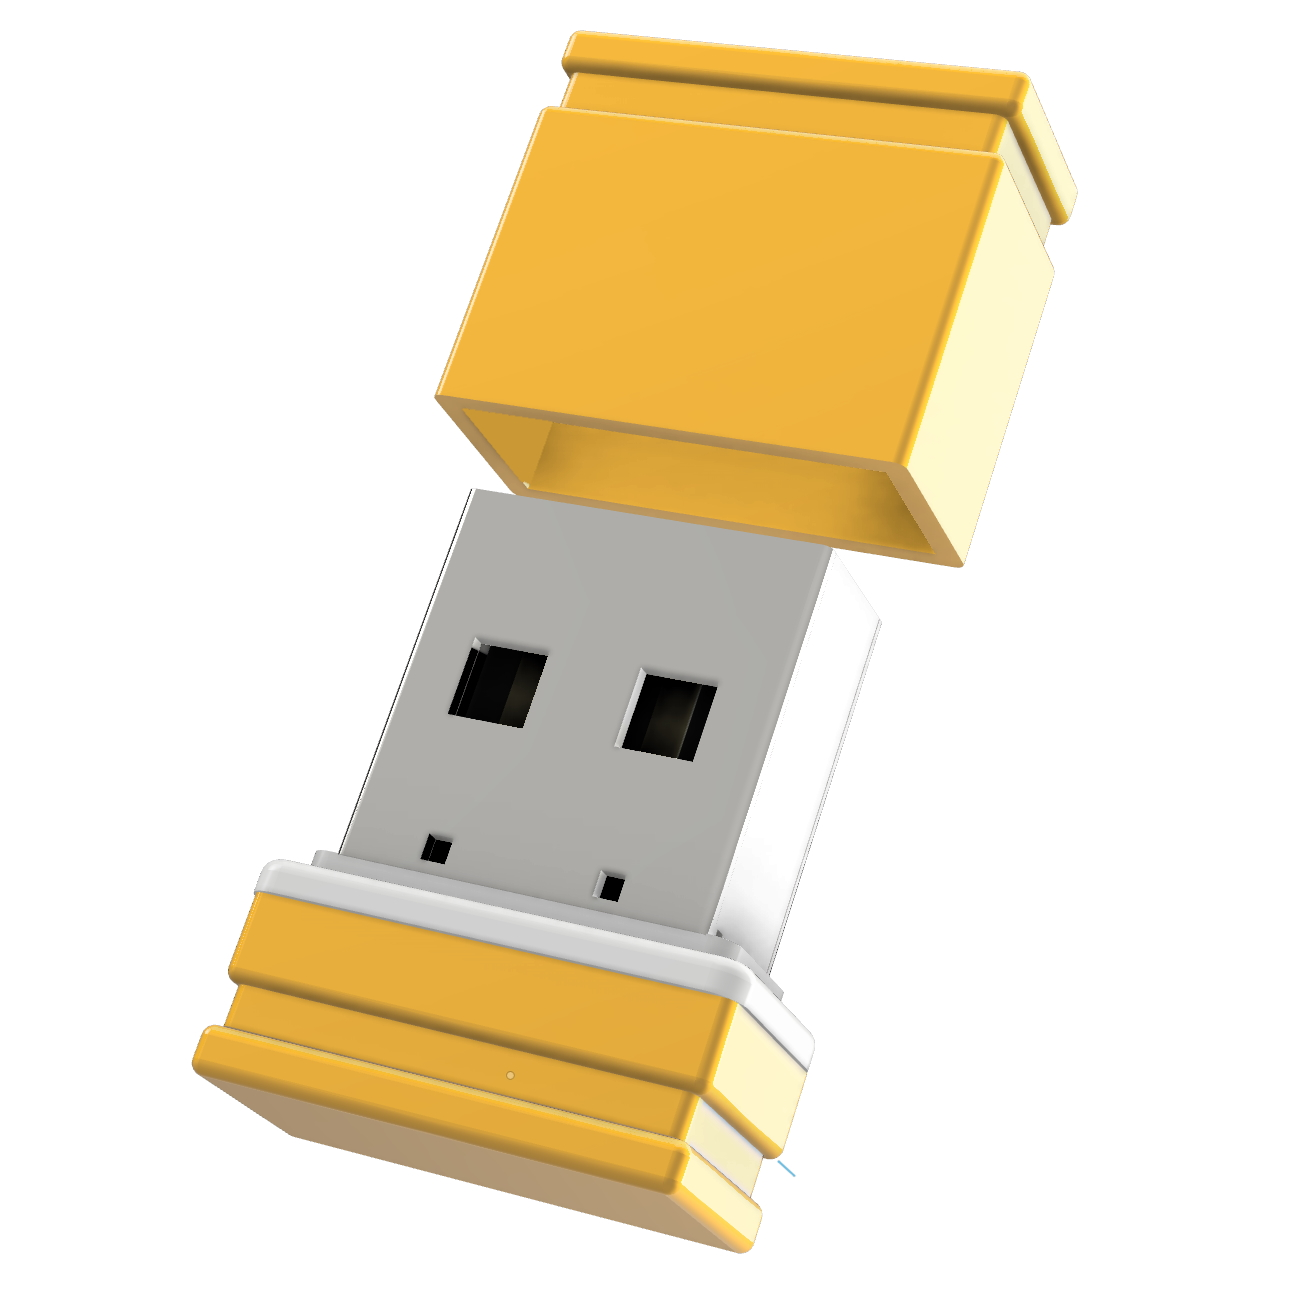 USB GERMANY ®ULTRA Mini GB) 32 (Gelb/Weiss, P1 USB-Stick